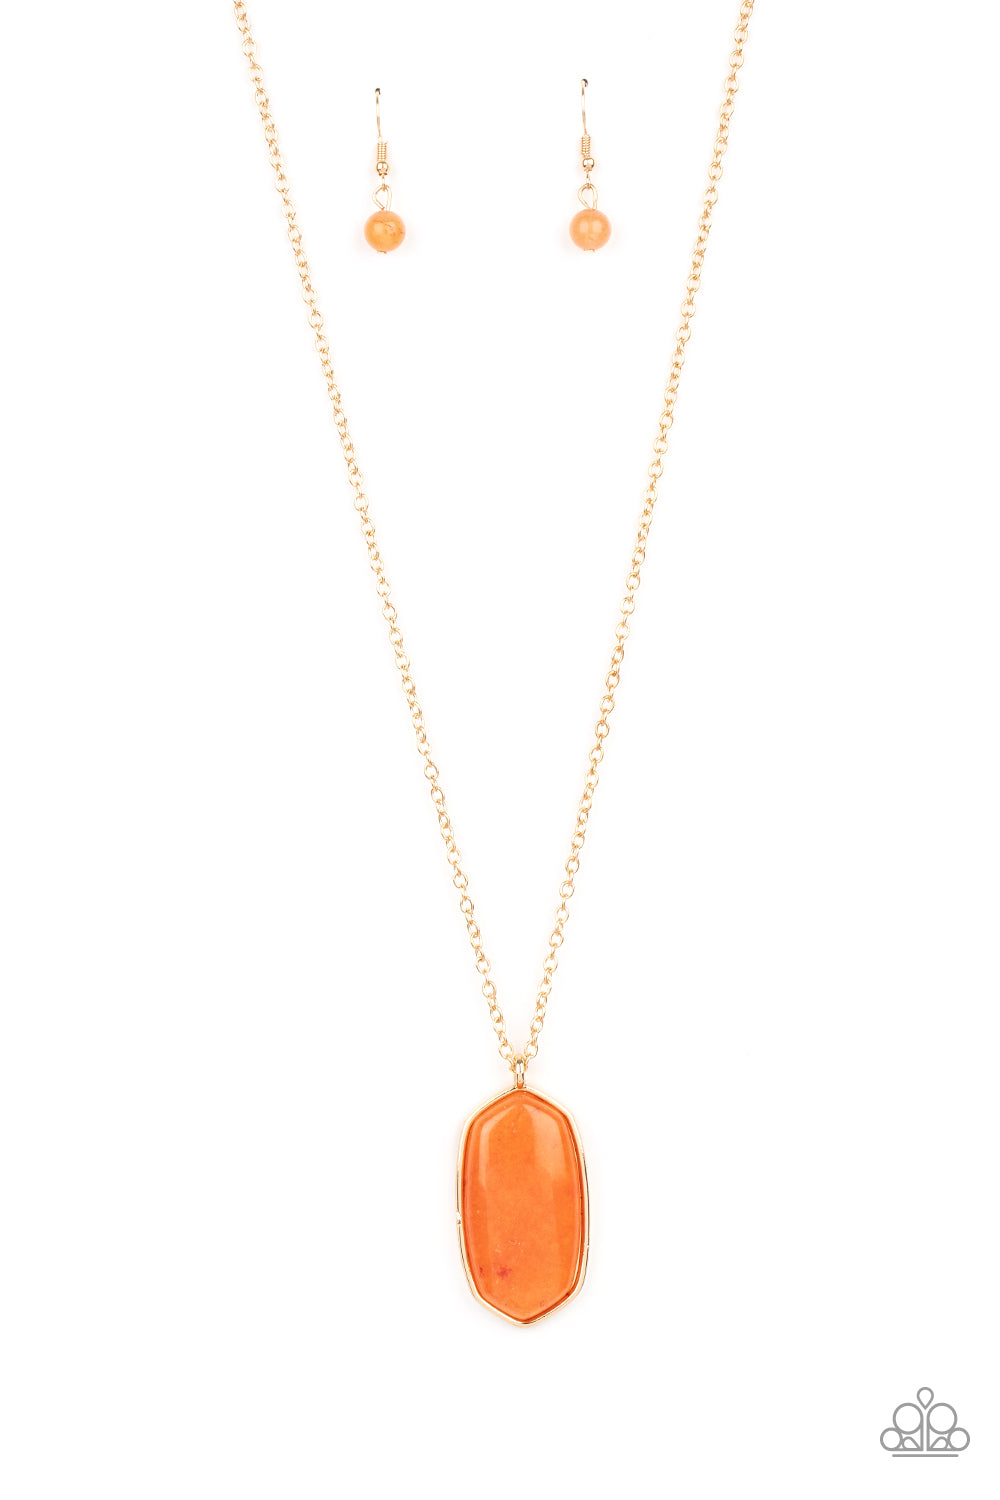 Elemental Elegance Necklace - Orange